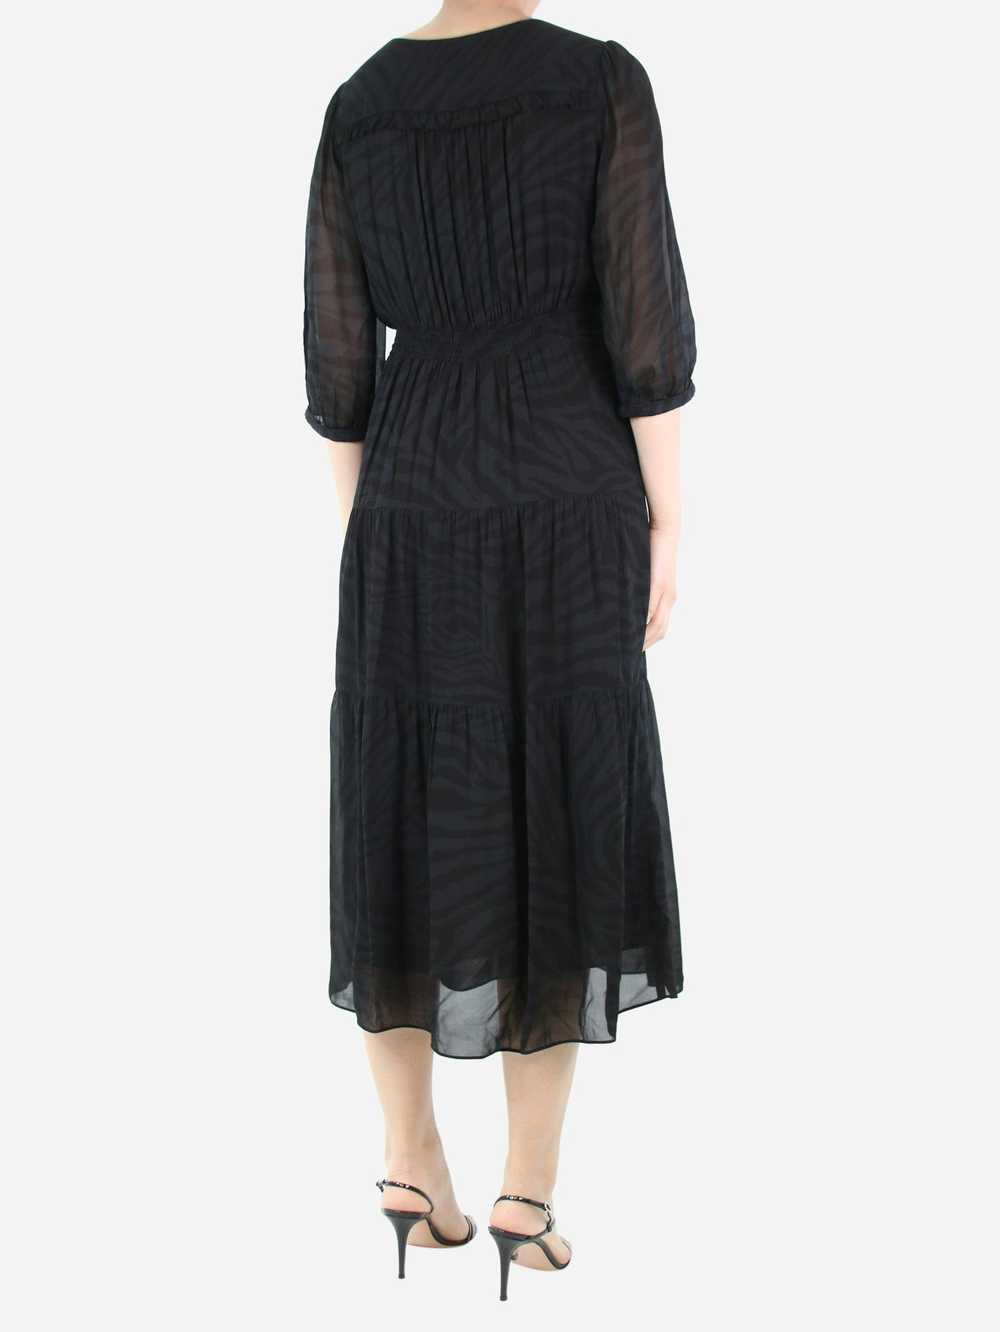 Ba&sh Black tonal patterned dress - size UK 8 - image 2